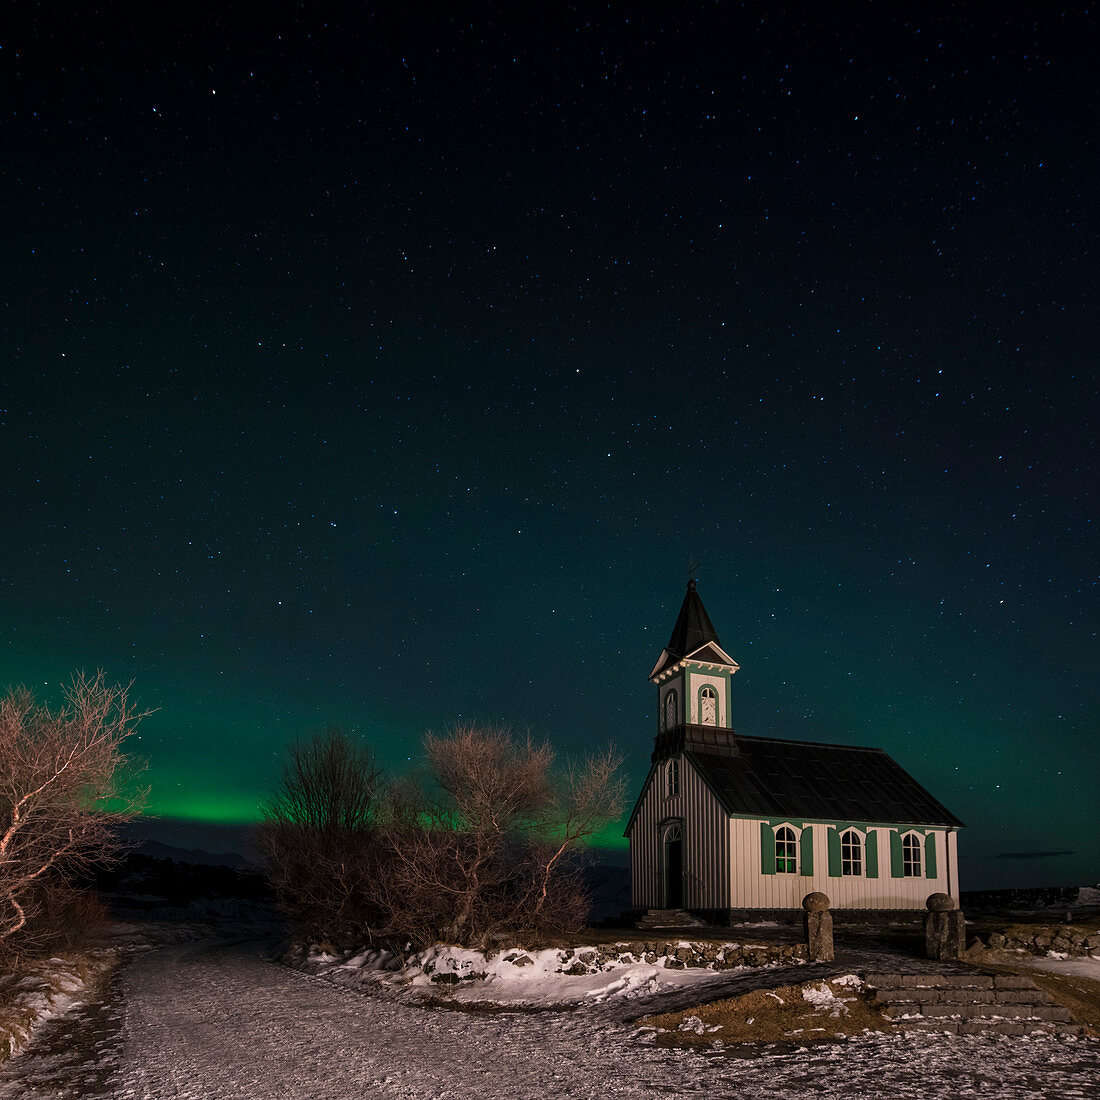 Das Nordlicht bzw. Polarlicht (Aurora borealis) und die pingvallakirkja Kirche im pingvellir Nationalpark, Island, Iceland, Europa